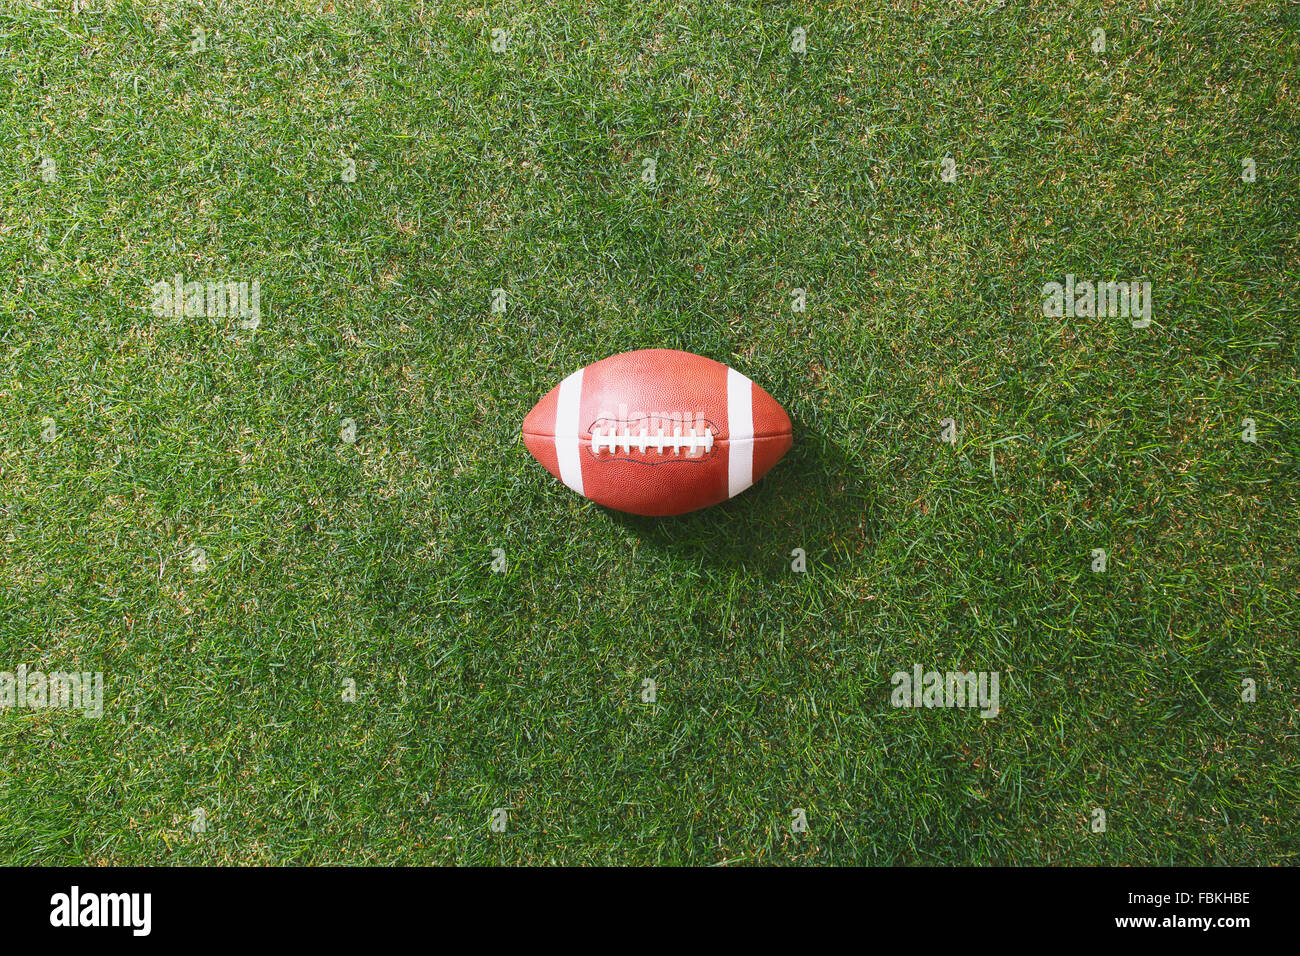 Amerikanischer Fußball auf dem Rasen Stockfoto